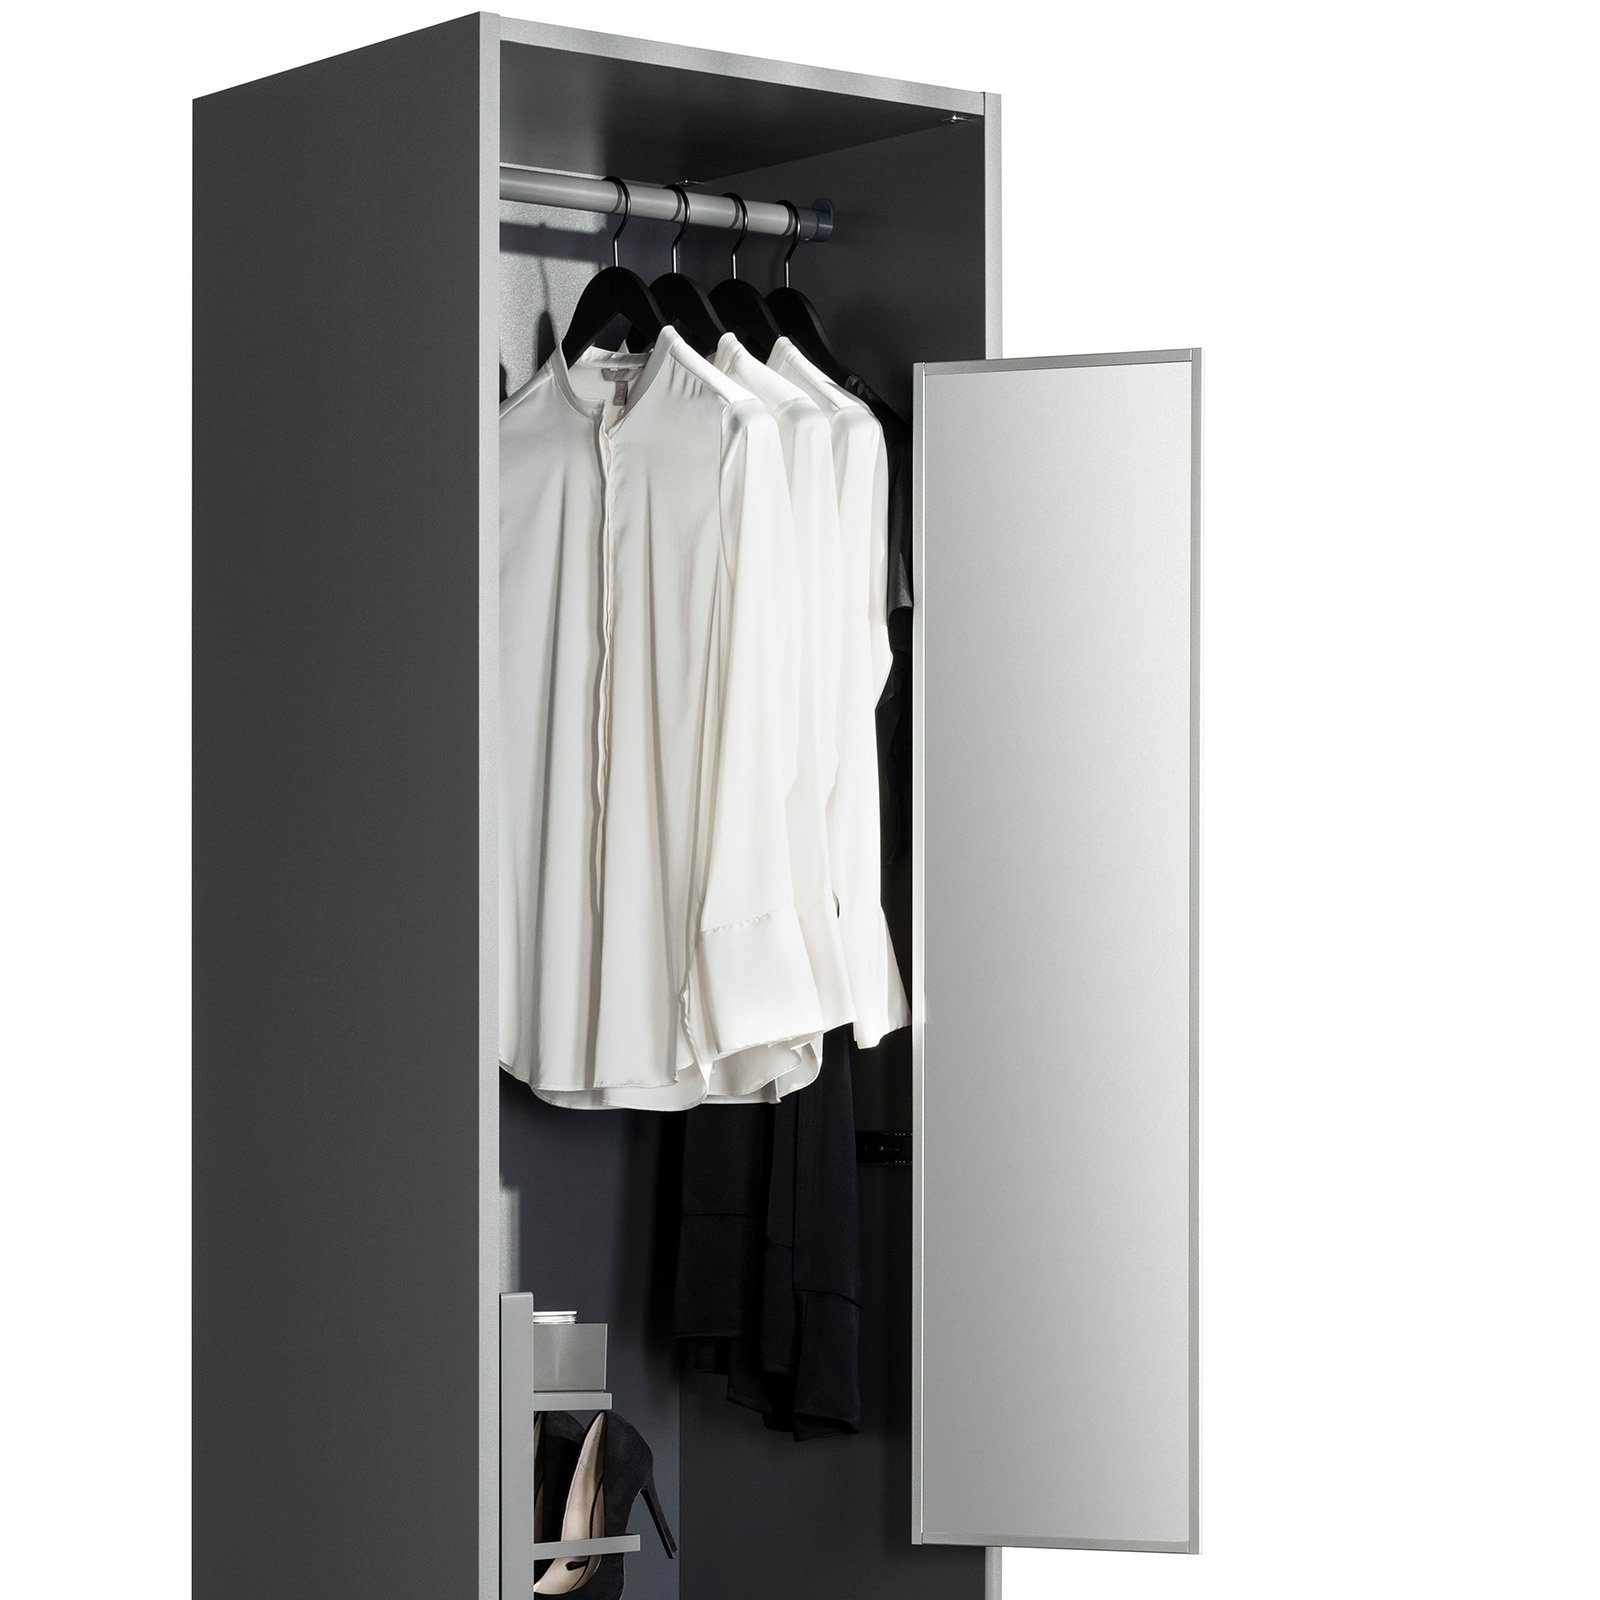 SO-TECH® Garderobe Schrankspiegel anthrazit ausziehbar, schwenkbar 180° (1 St)